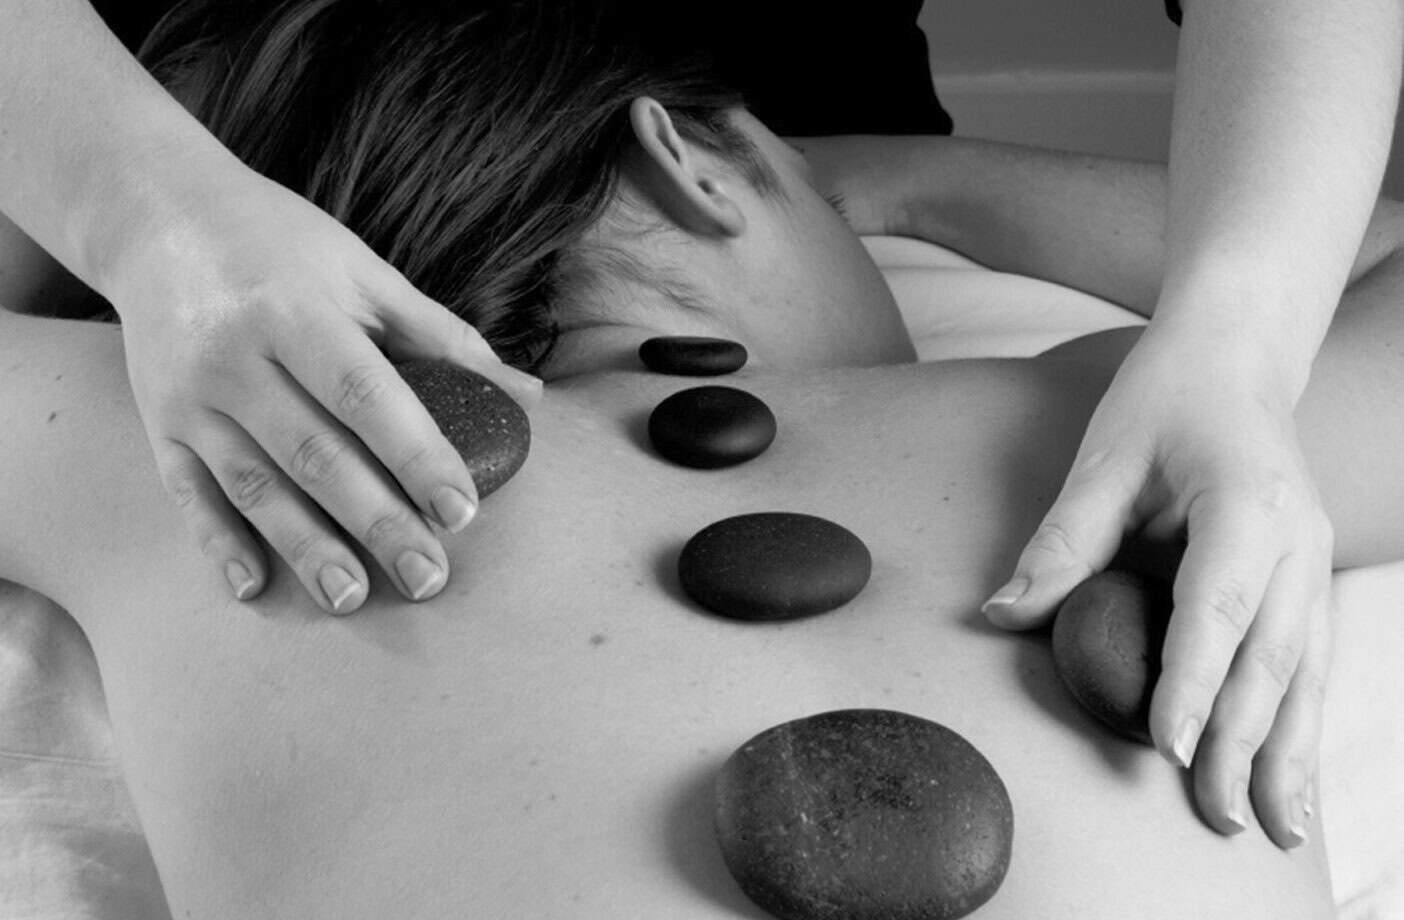 Sydney massages a client's back using hot stones.